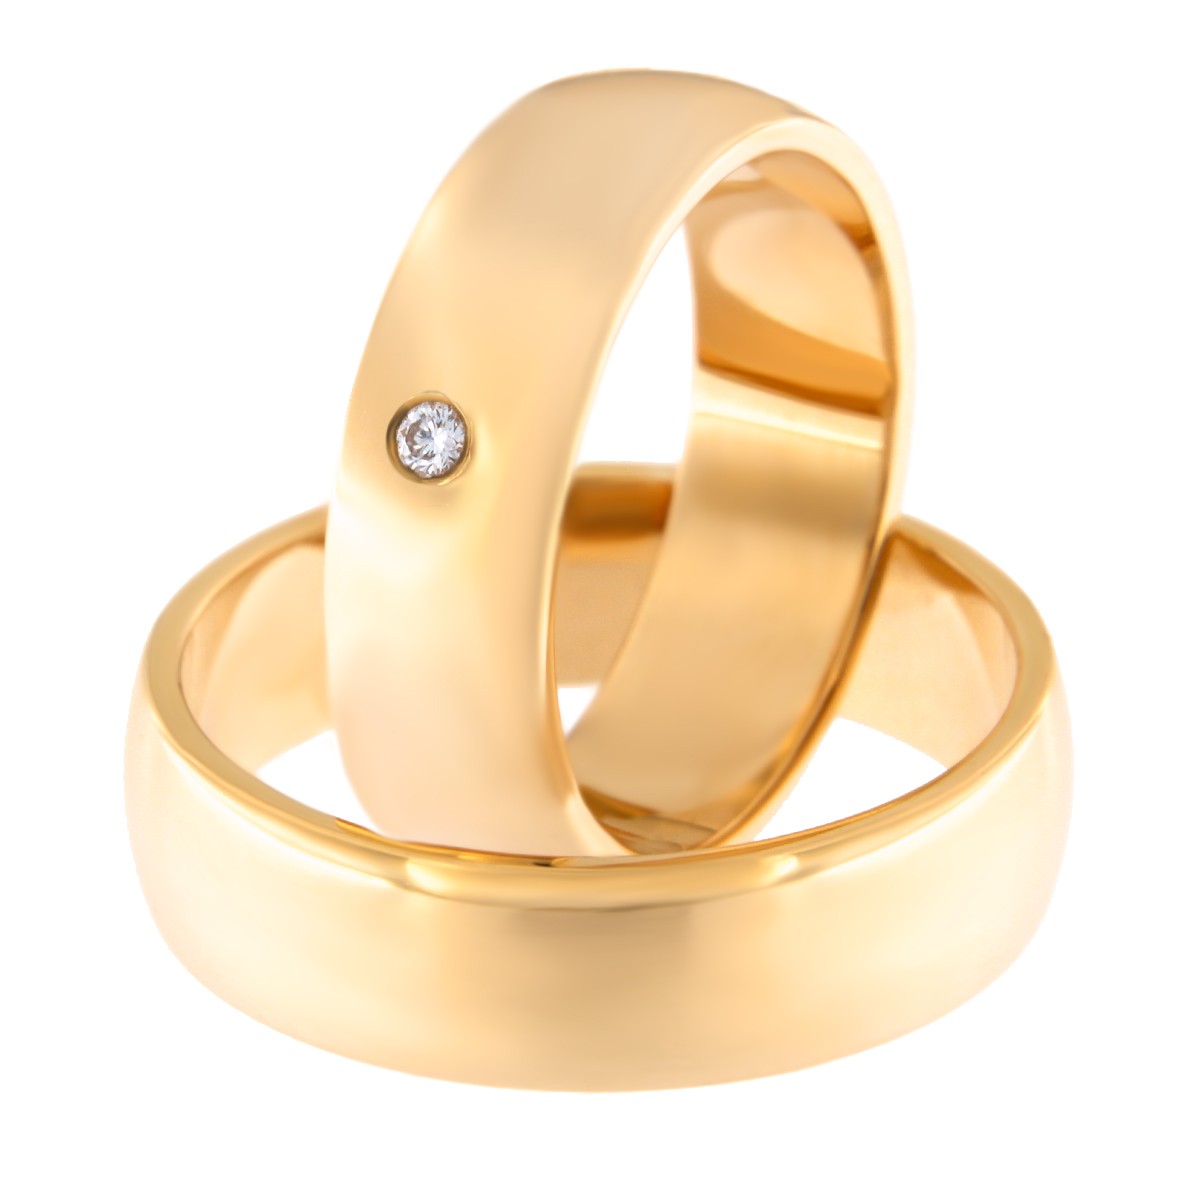 Kullast abielusõrmus teemantiga Kood: Rn0116-6-1k